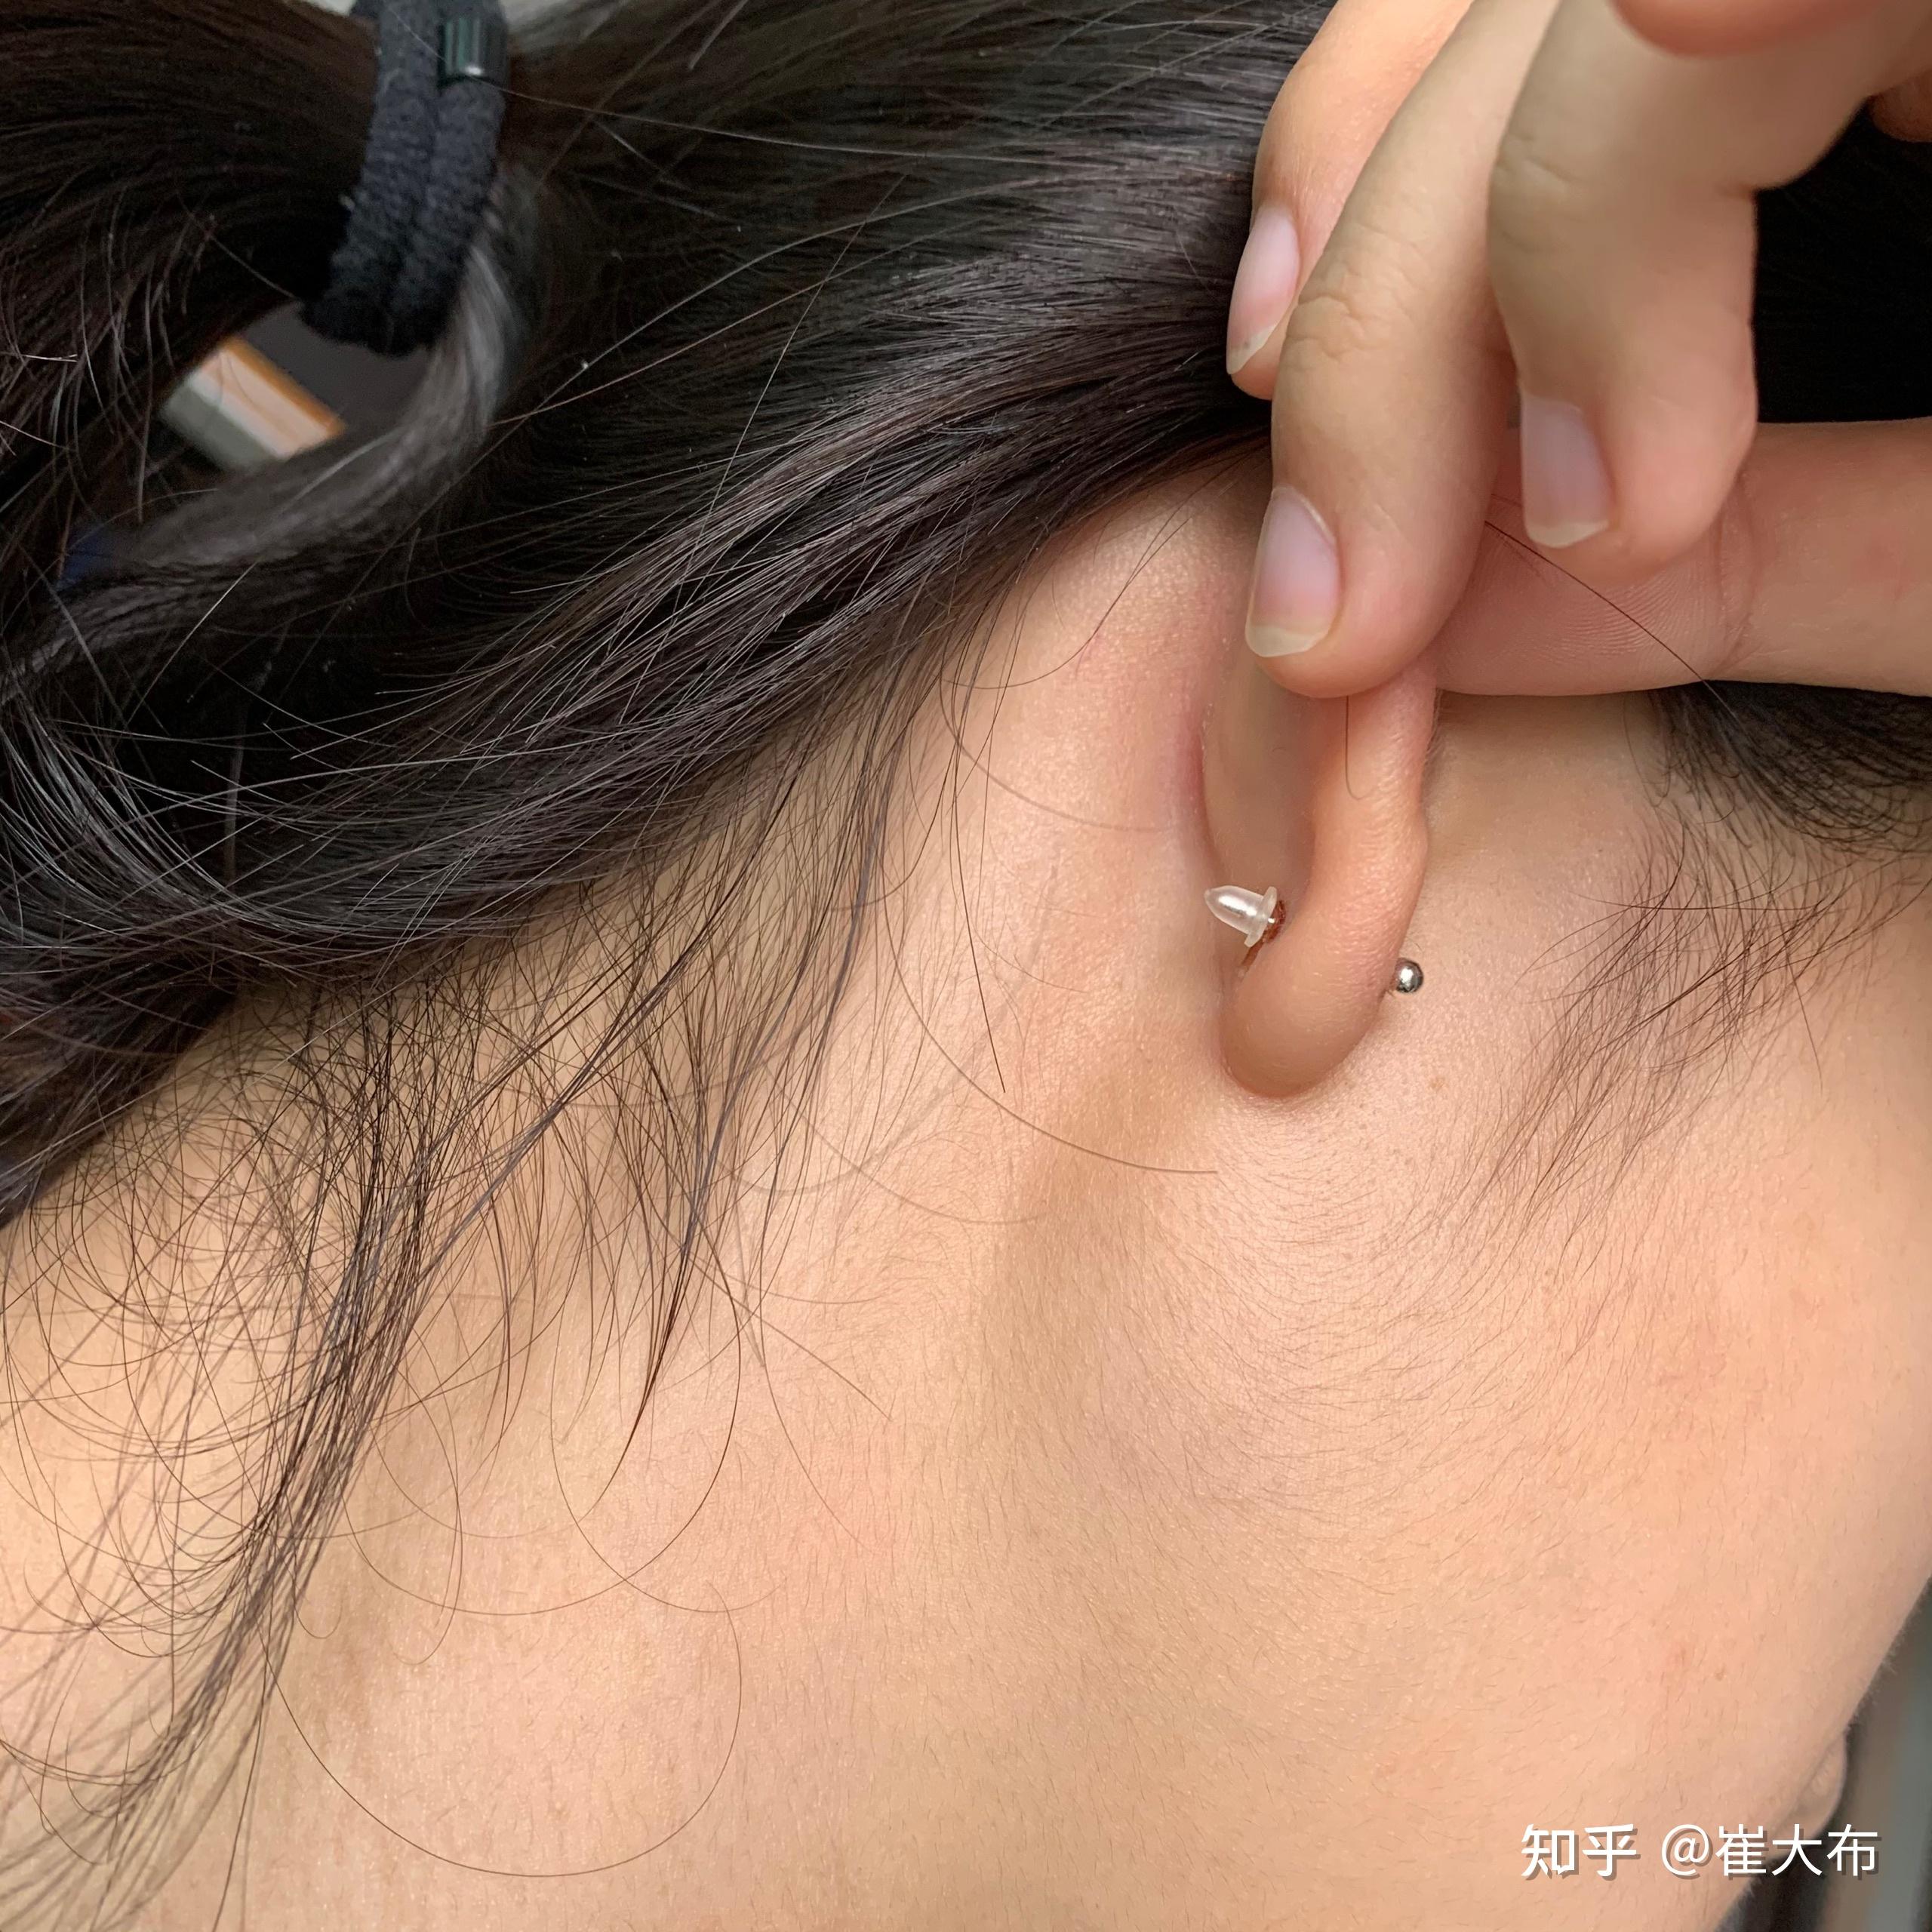 厚耳垂打耳洞是一种什么样的体验,会很疼吗?